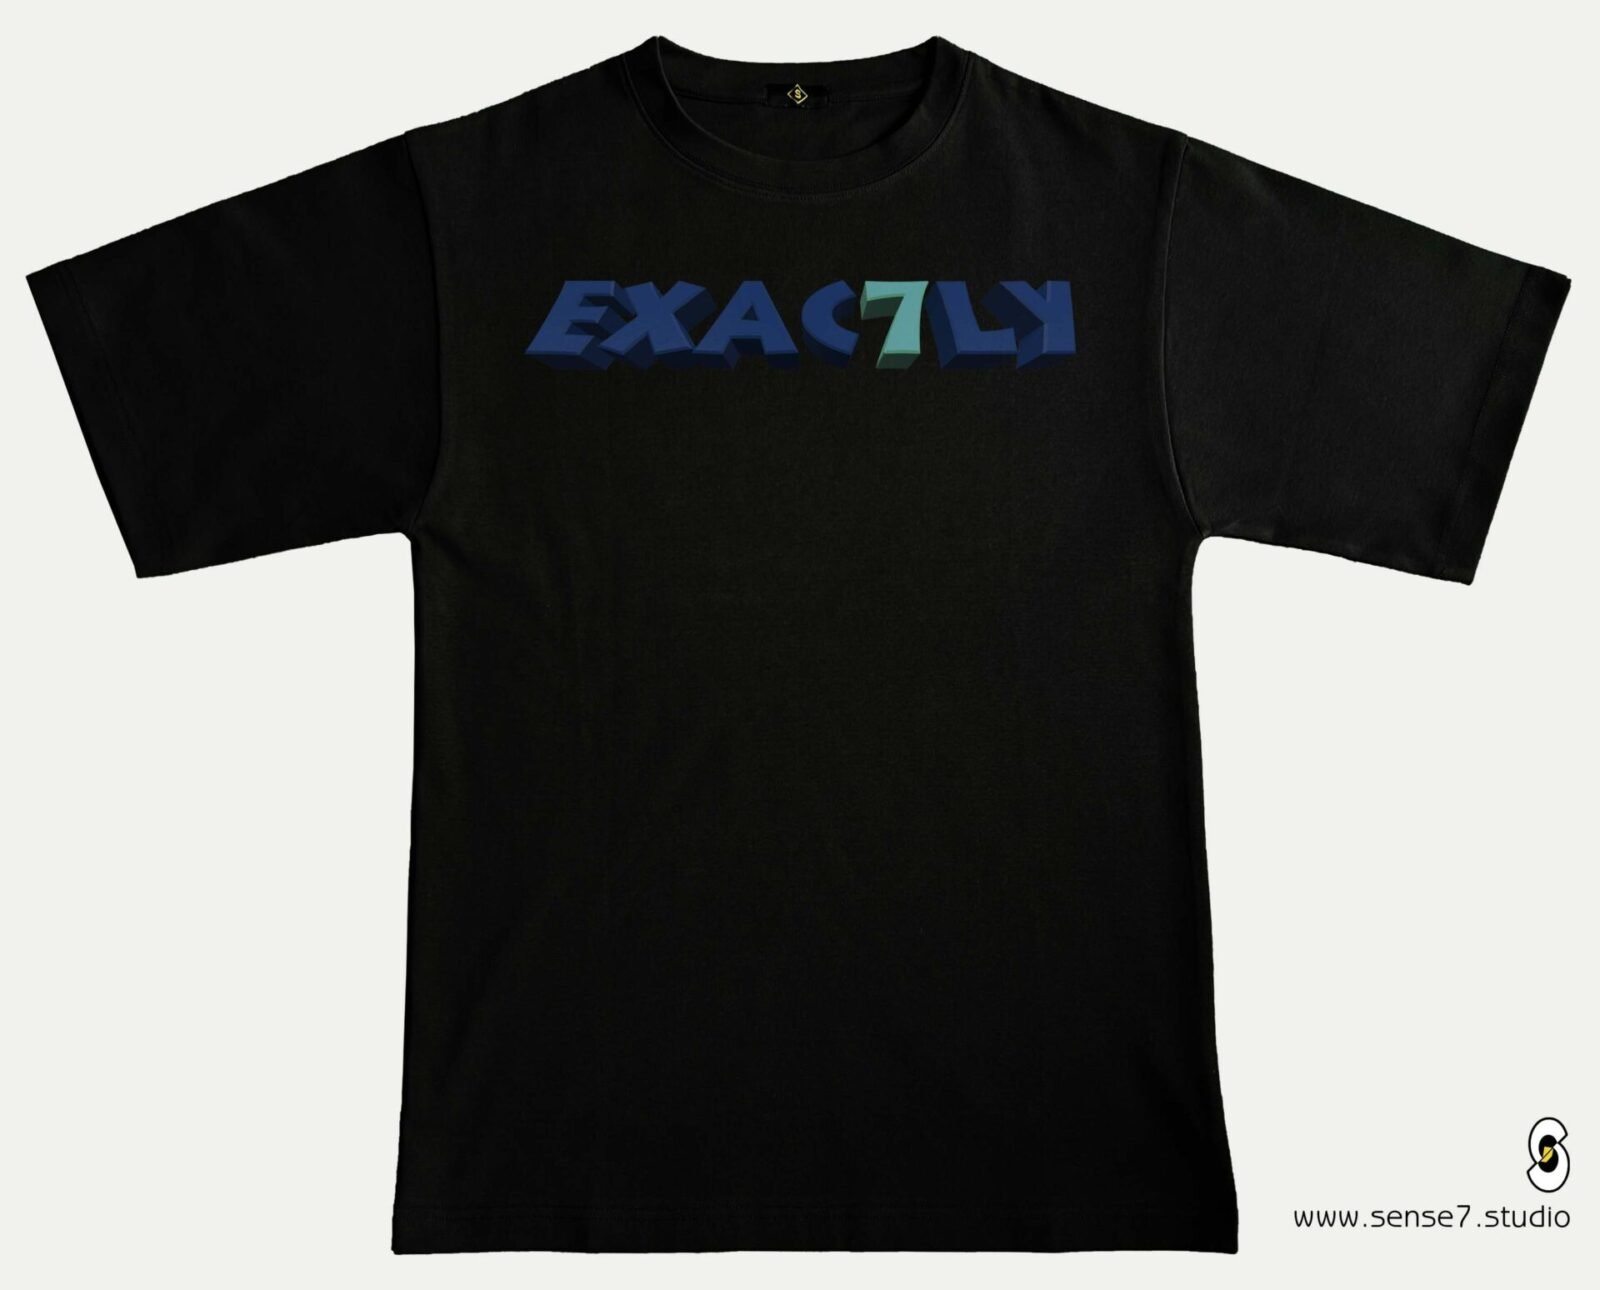 exac7ly_exactly_t-shirts